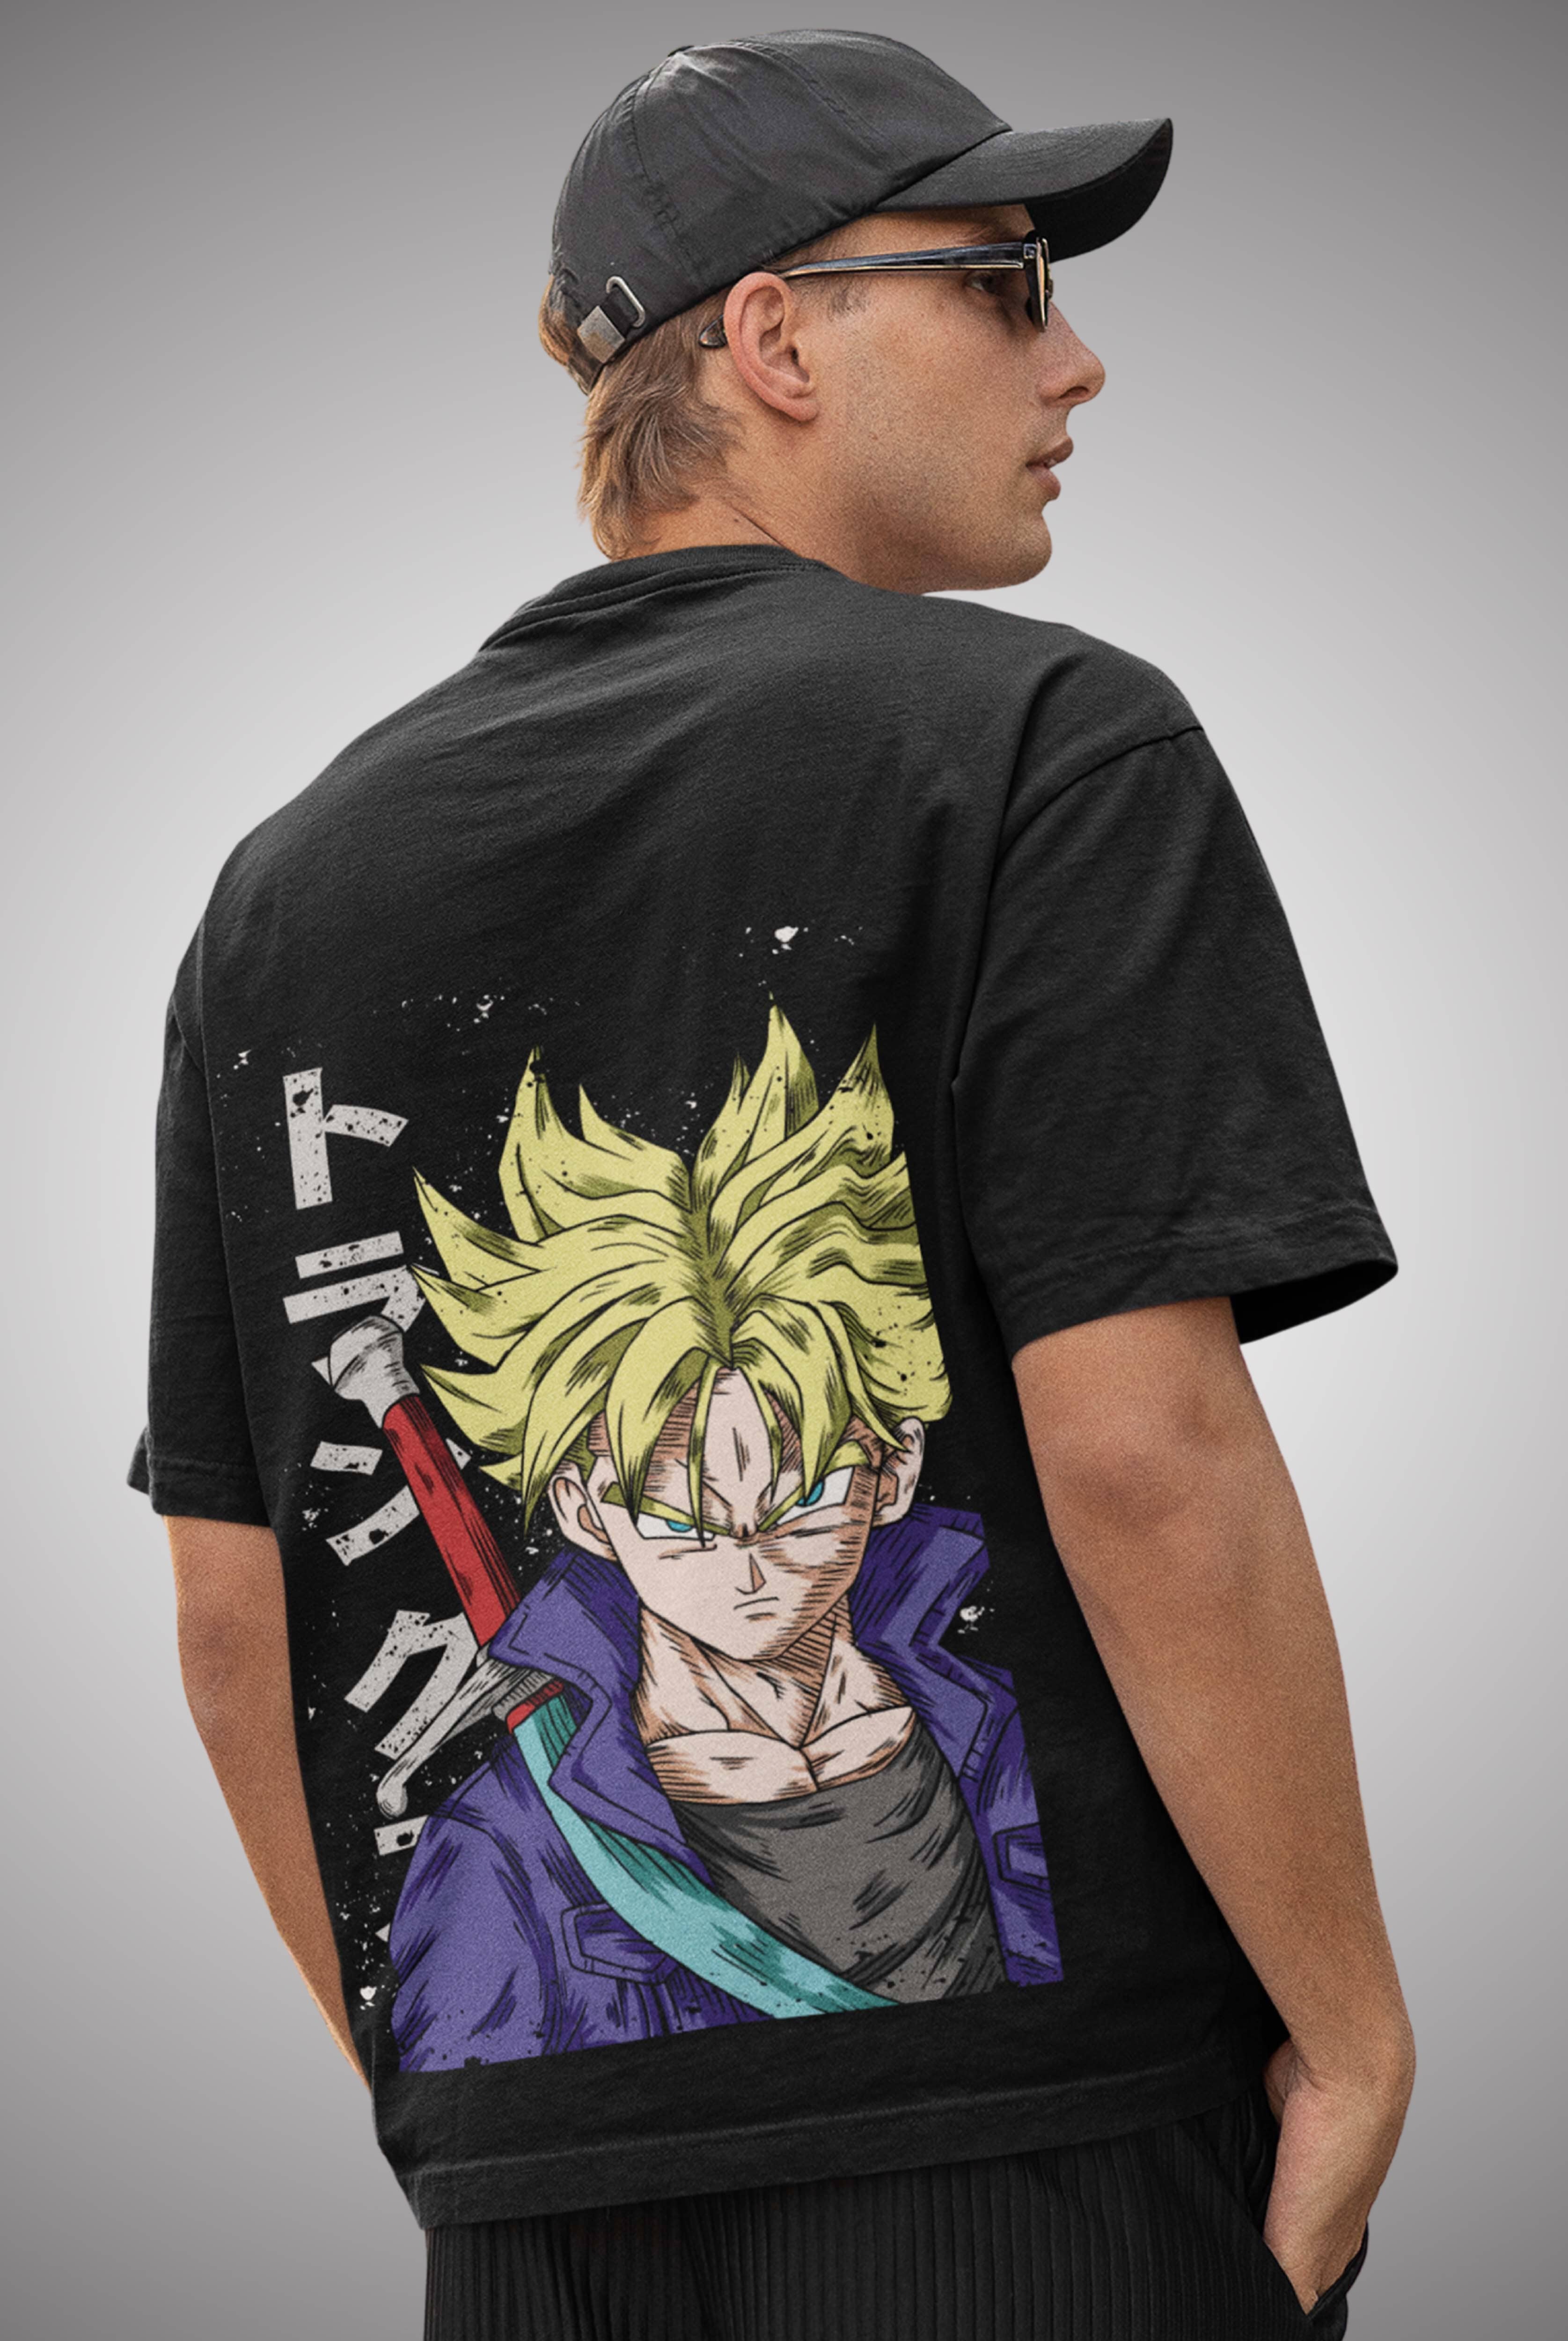 Dragon Ball Z Men's Oversized Anime T-Shirt